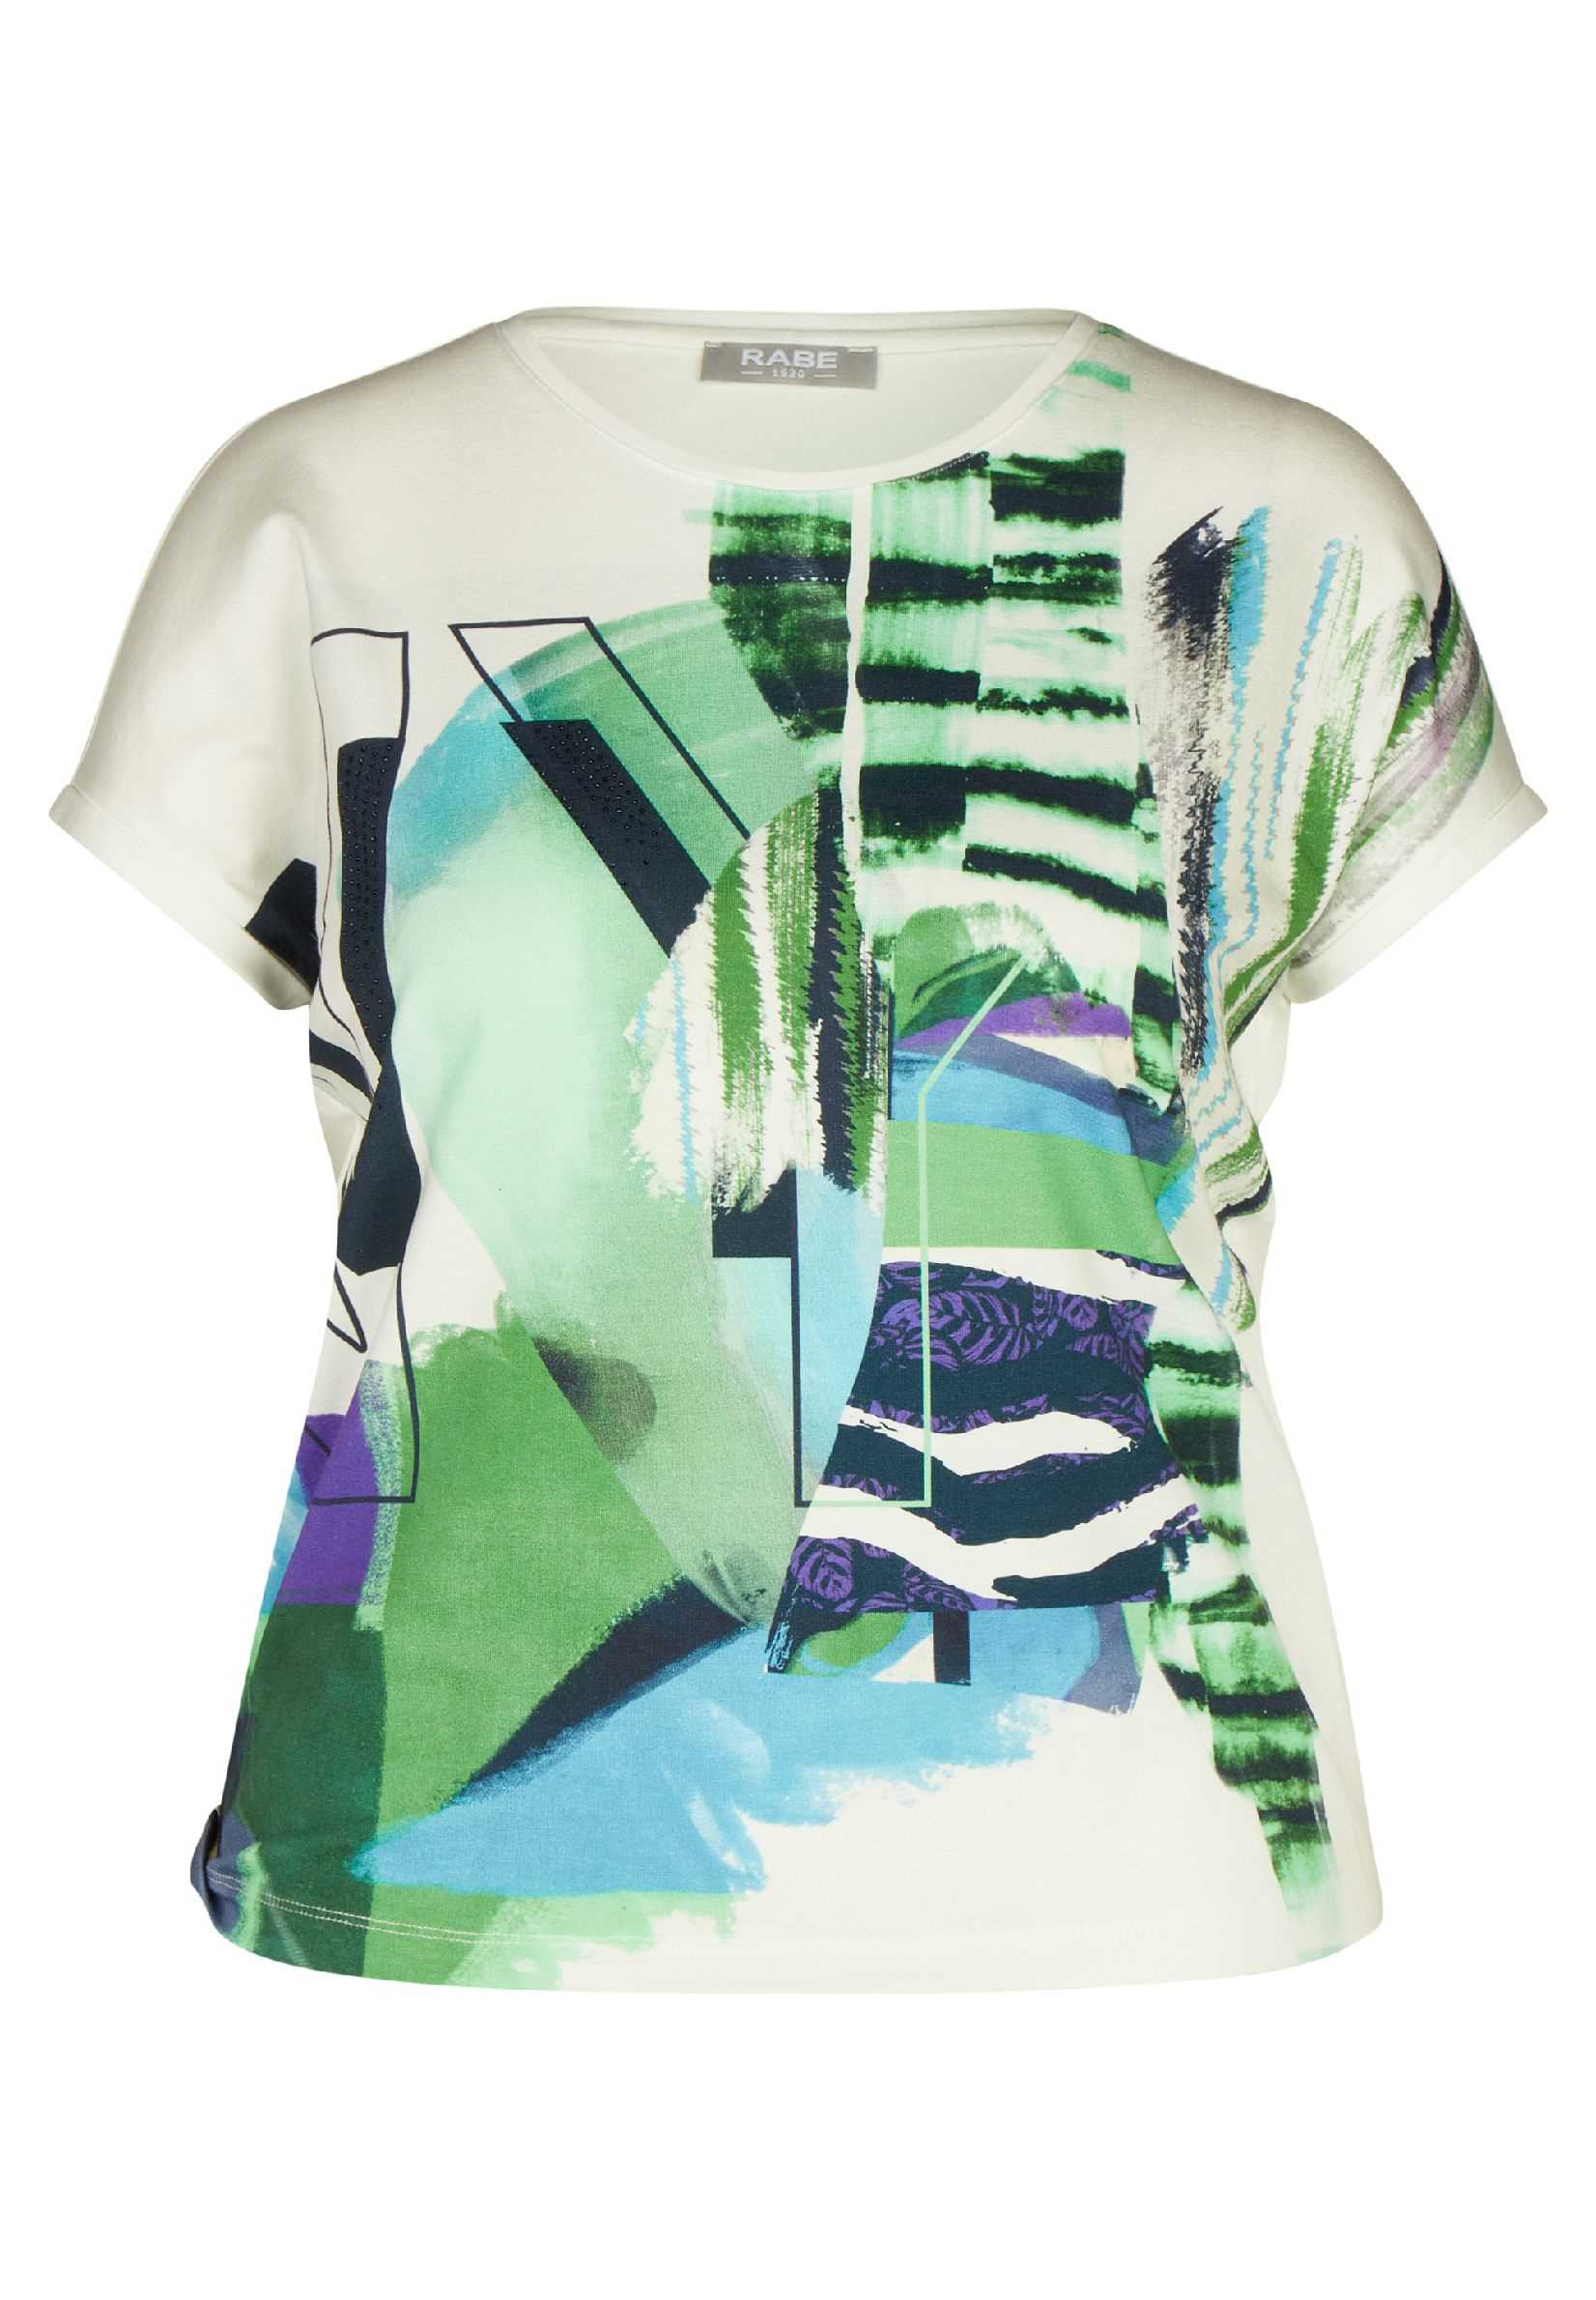 Rabe T-Shirt Groen / E Mariëlle Daniëlle | Exclusief Natur Mode Print